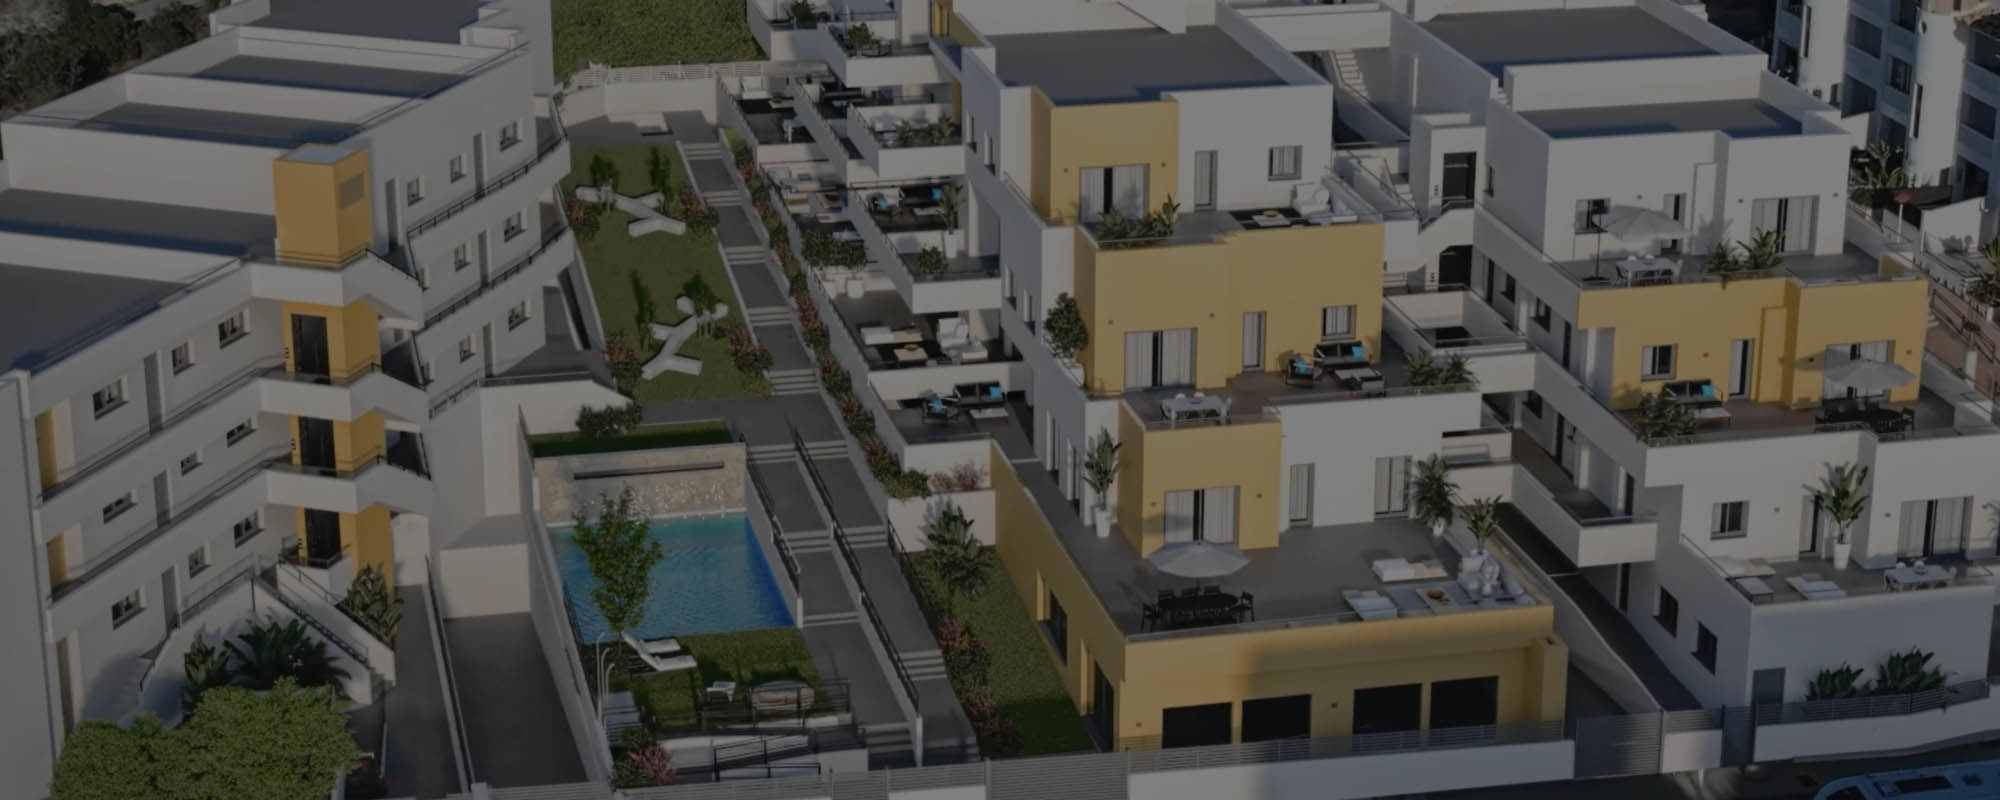 Animación 3D de una urbanización residencial